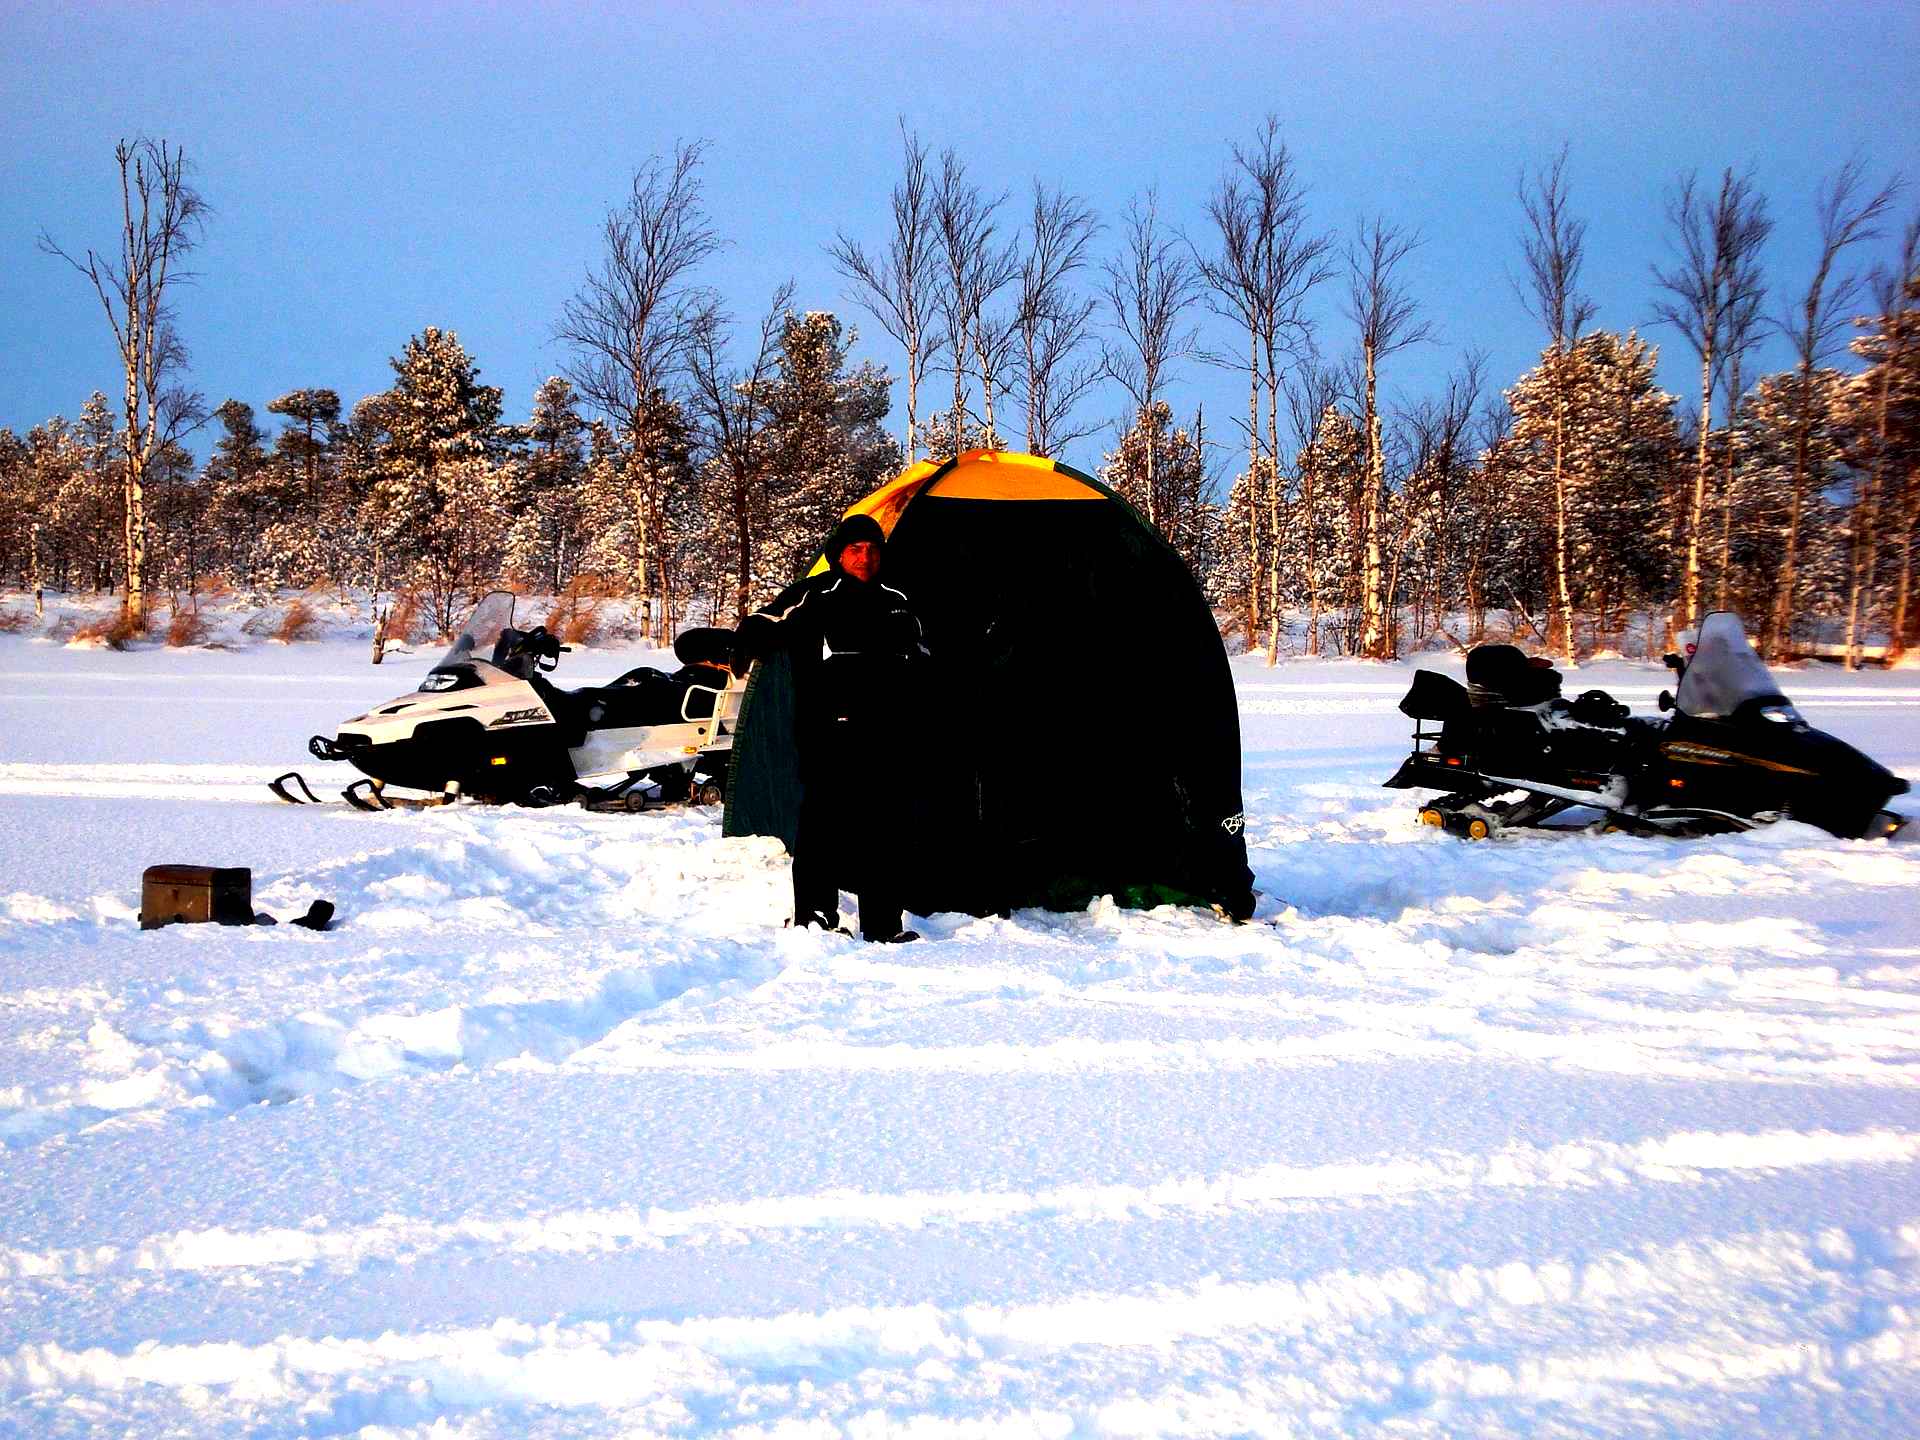 Зимняя рыбалка в палатке. Рыбалка в палатке зимой. Зимняя рыбалка на льду в палатке. Бур для зимней рыбалки палатка. Сгорела палатка на зимней рыбалке.